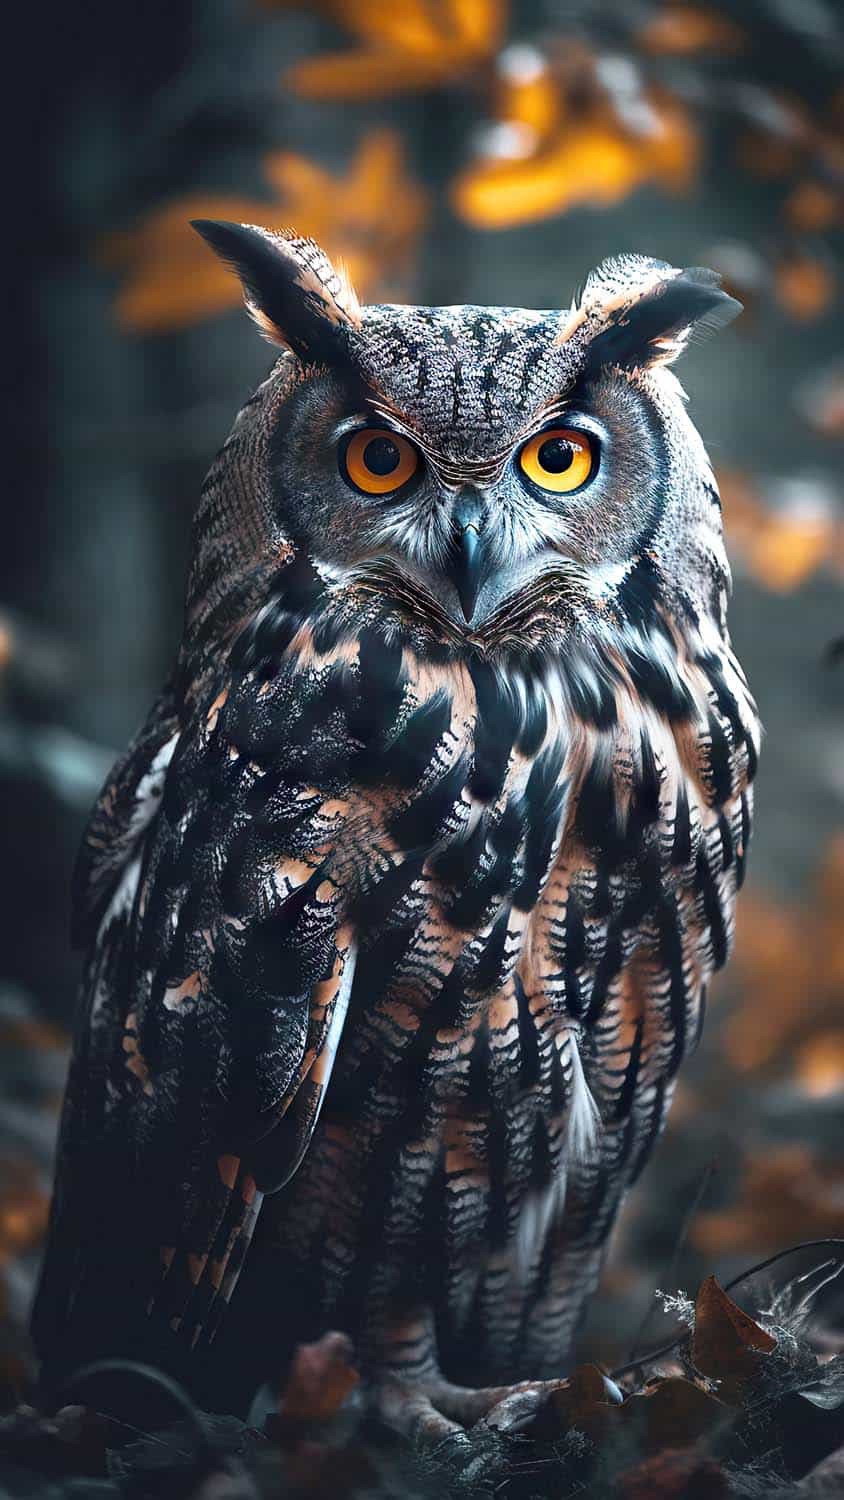 Owl Digital Art Wallpaper 4k Ultra HD ID6950